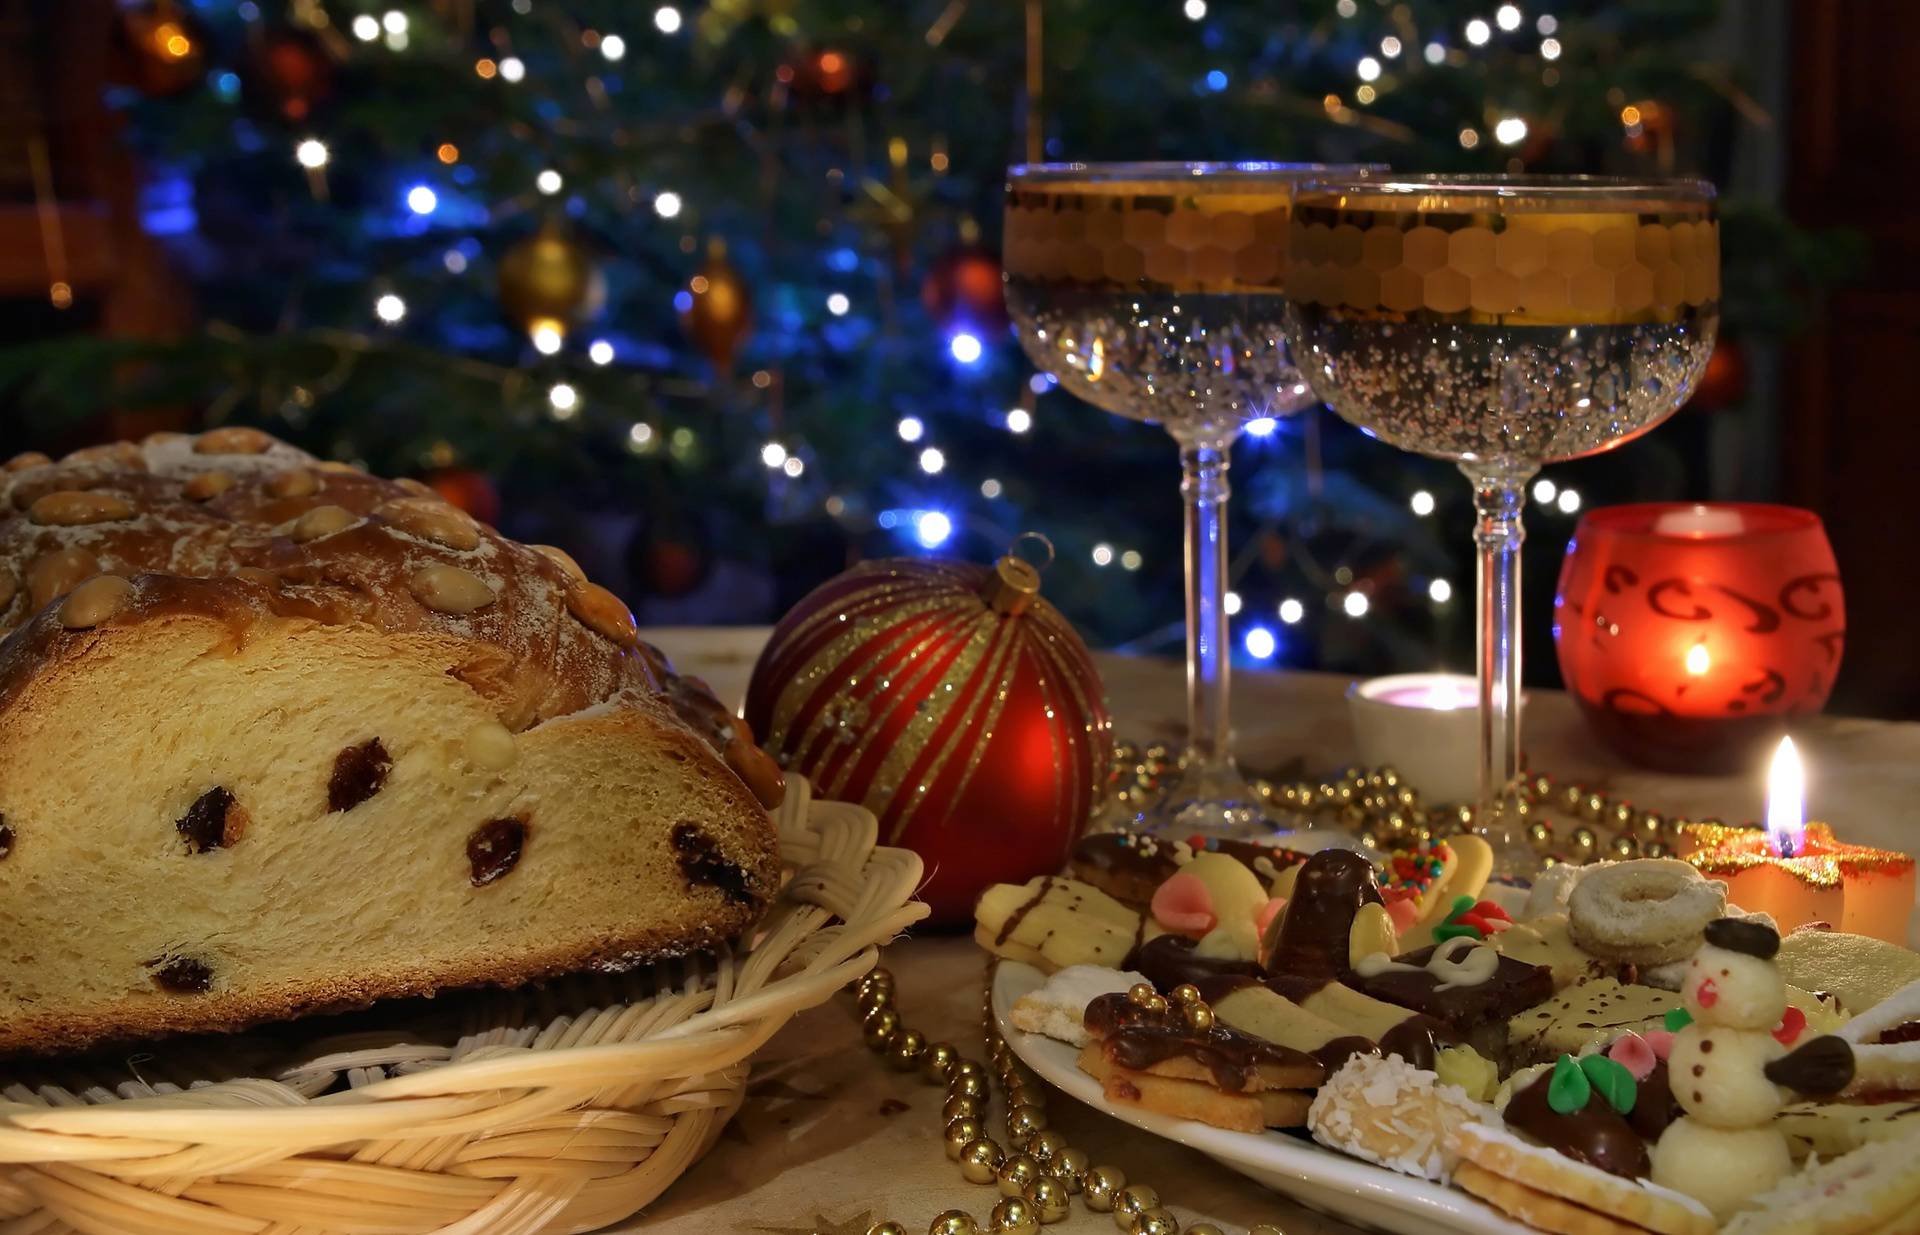 Božićni kuglof: Recept za pravu blagdansku poslasticu koji će zadovoljiti i zahtjevnija nepca